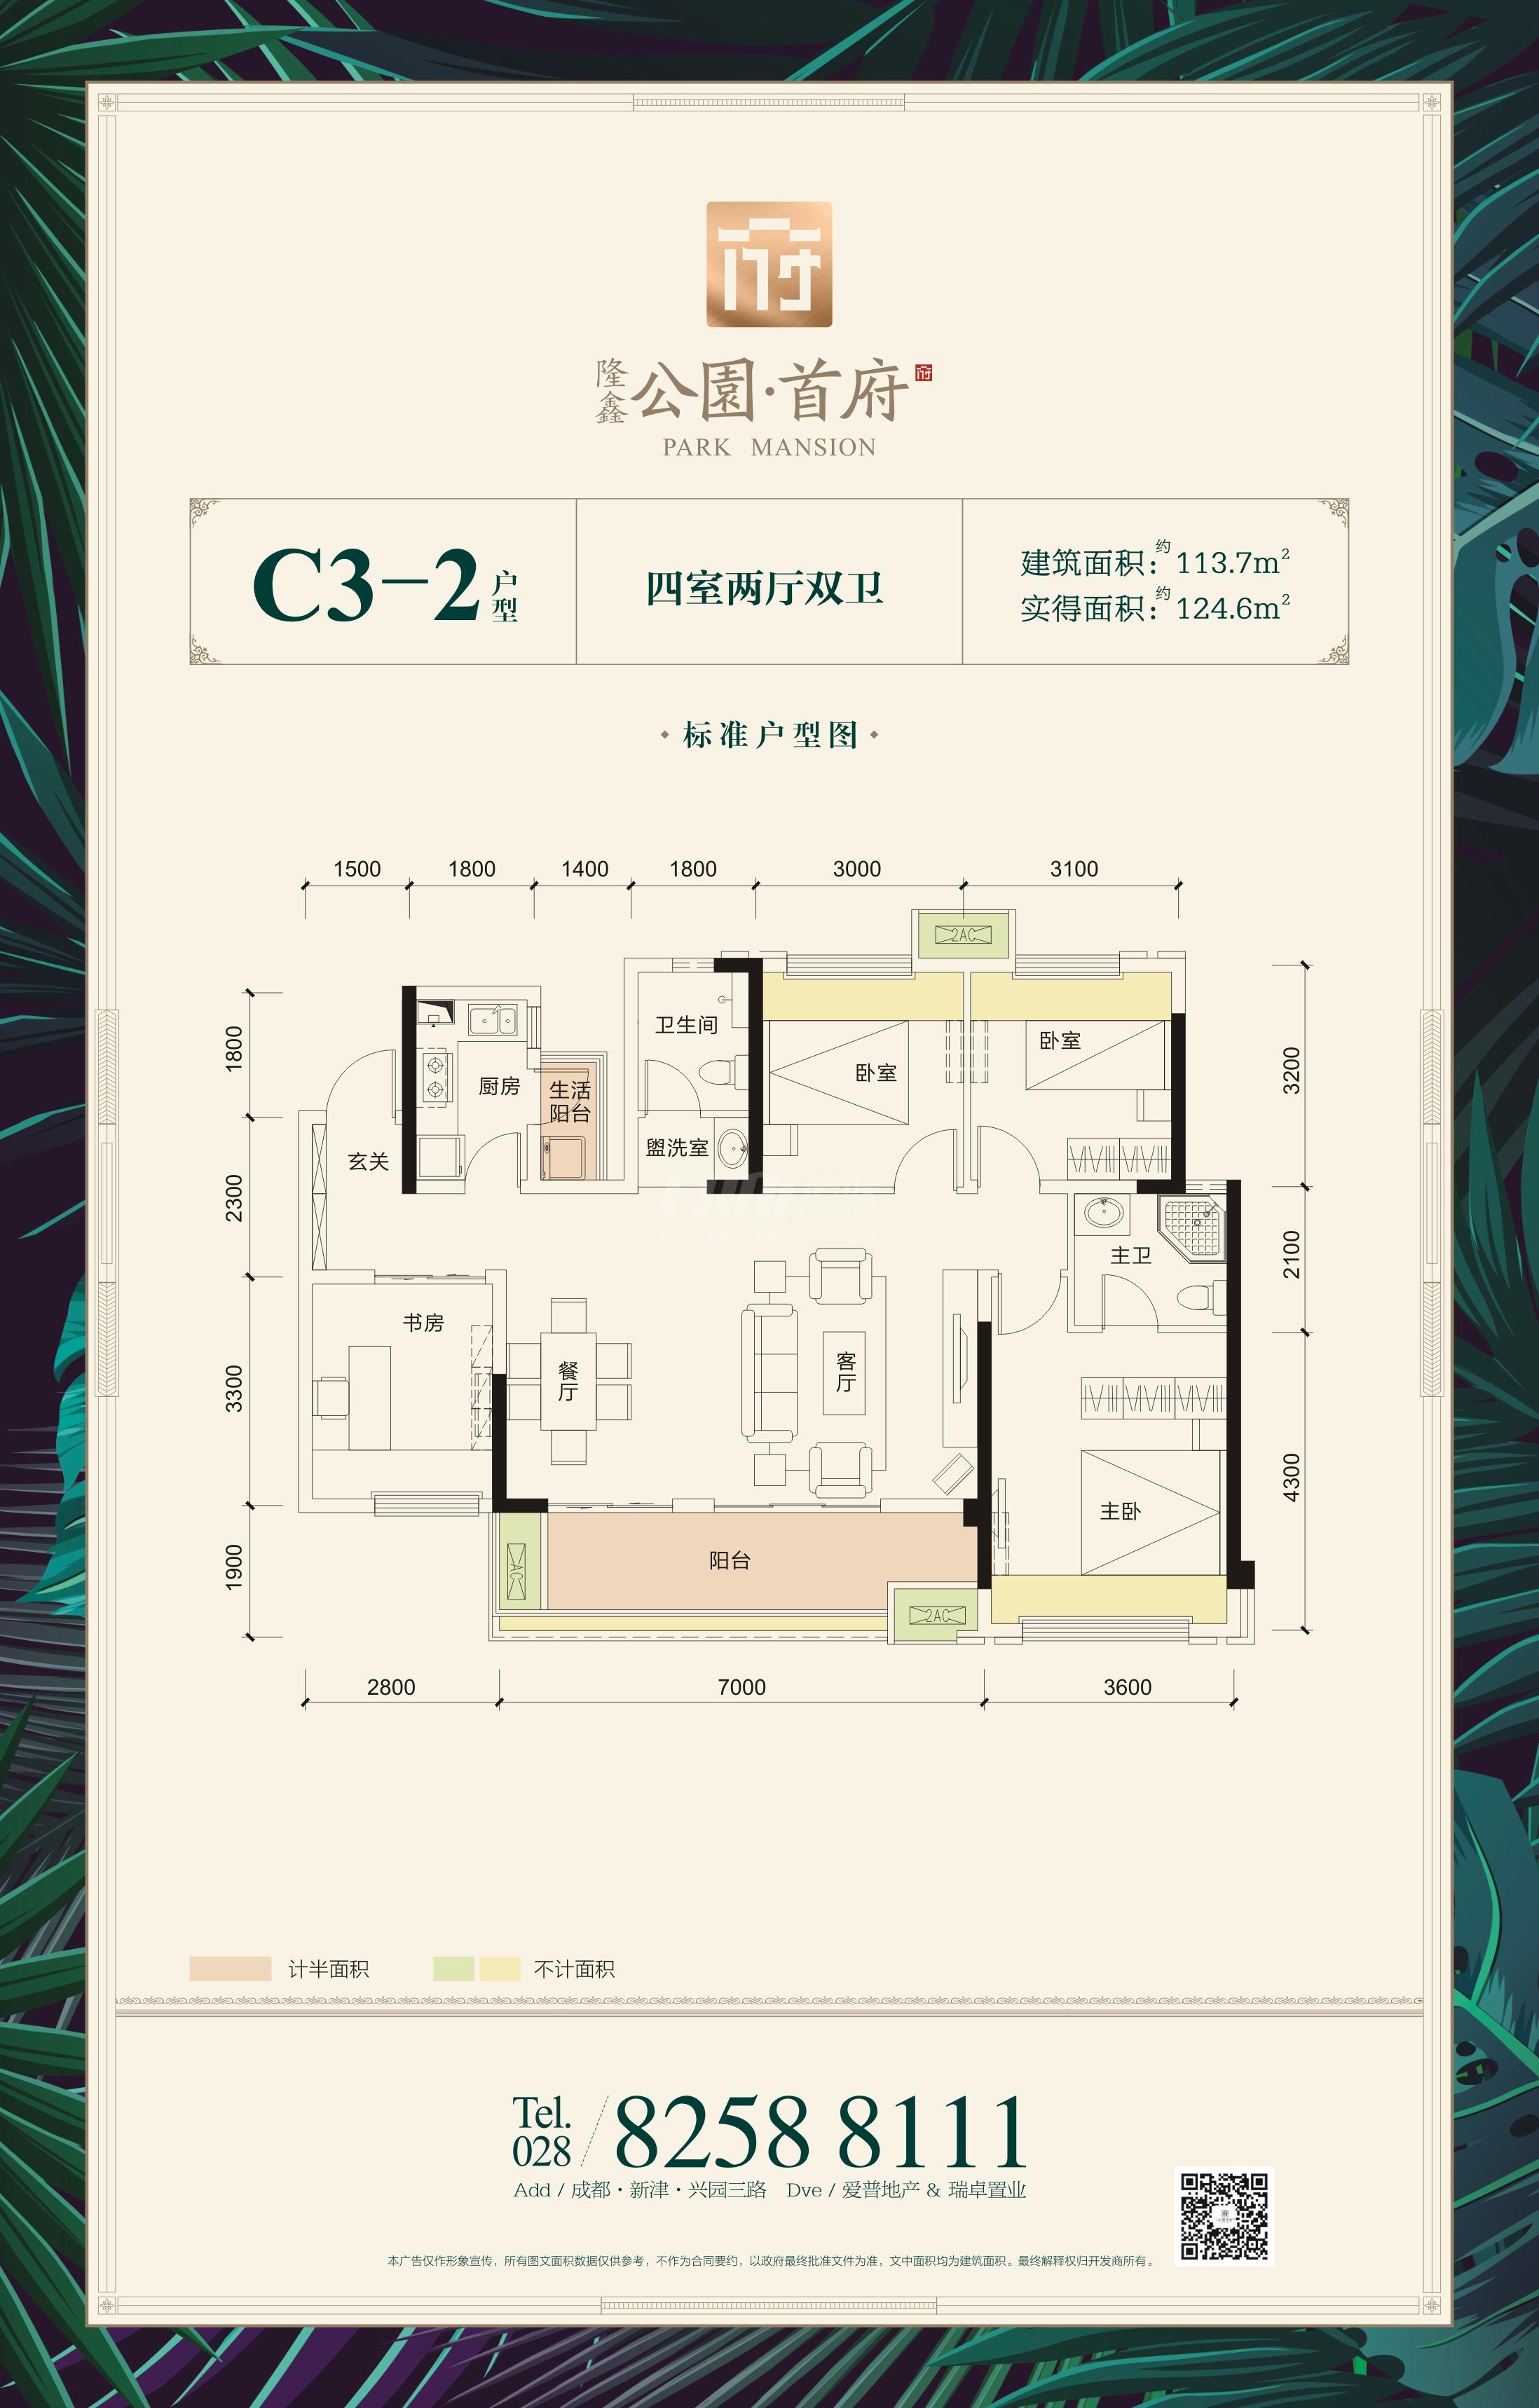 隆鑫首府1期c3-2户型图,4室2厅2卫113.70平米- 成都